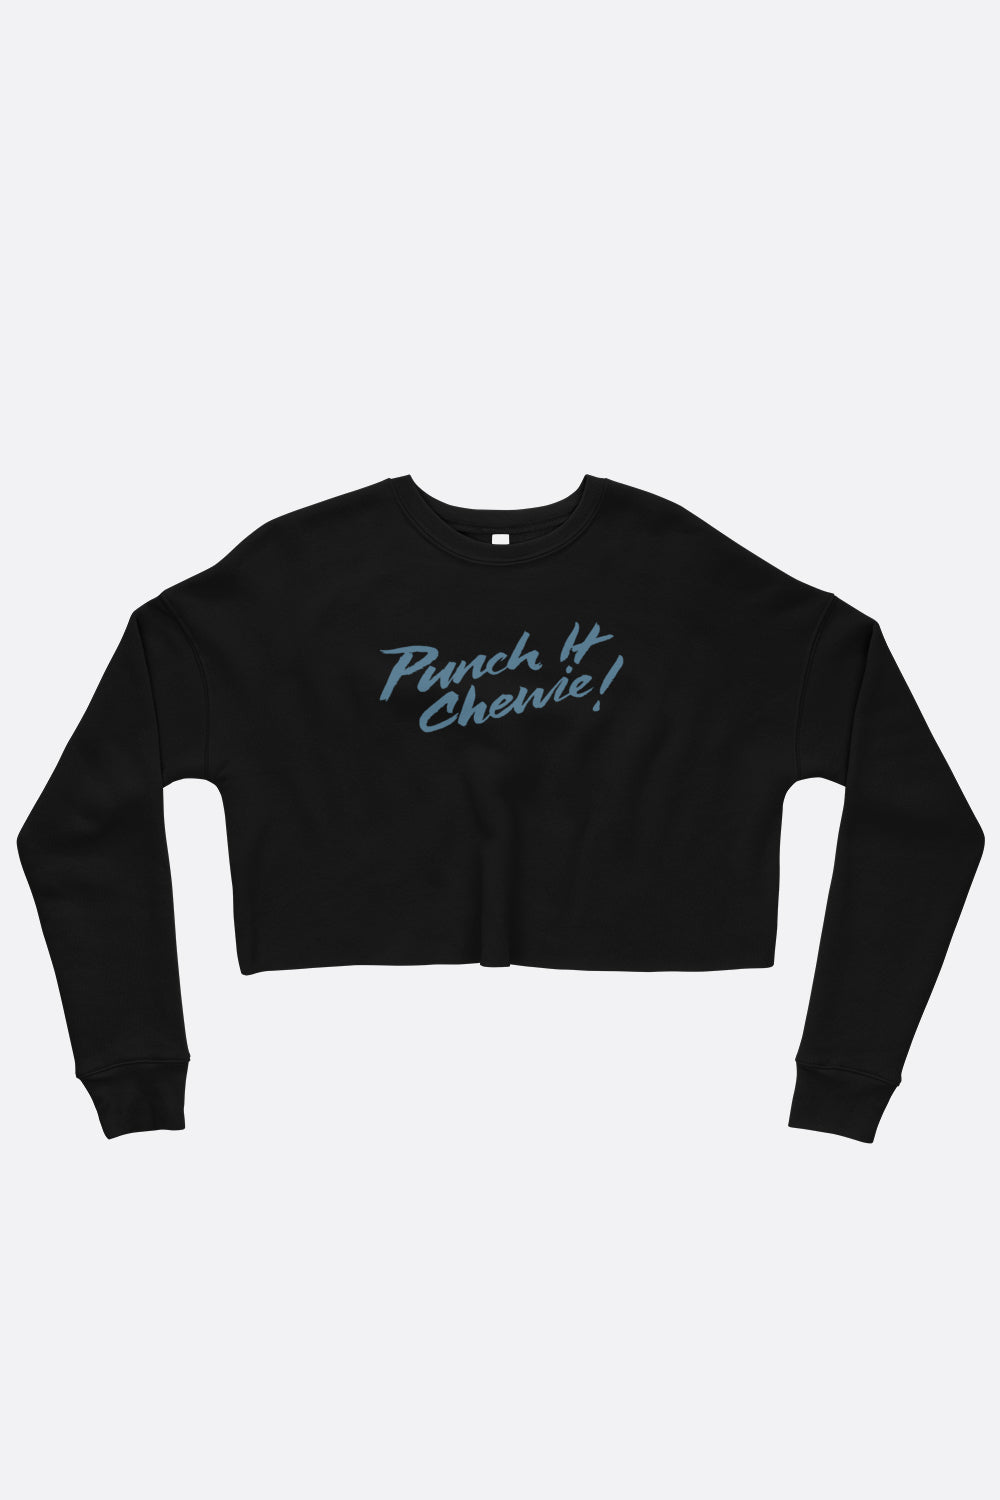 Punch It, Chewie Crop Sweatshirt